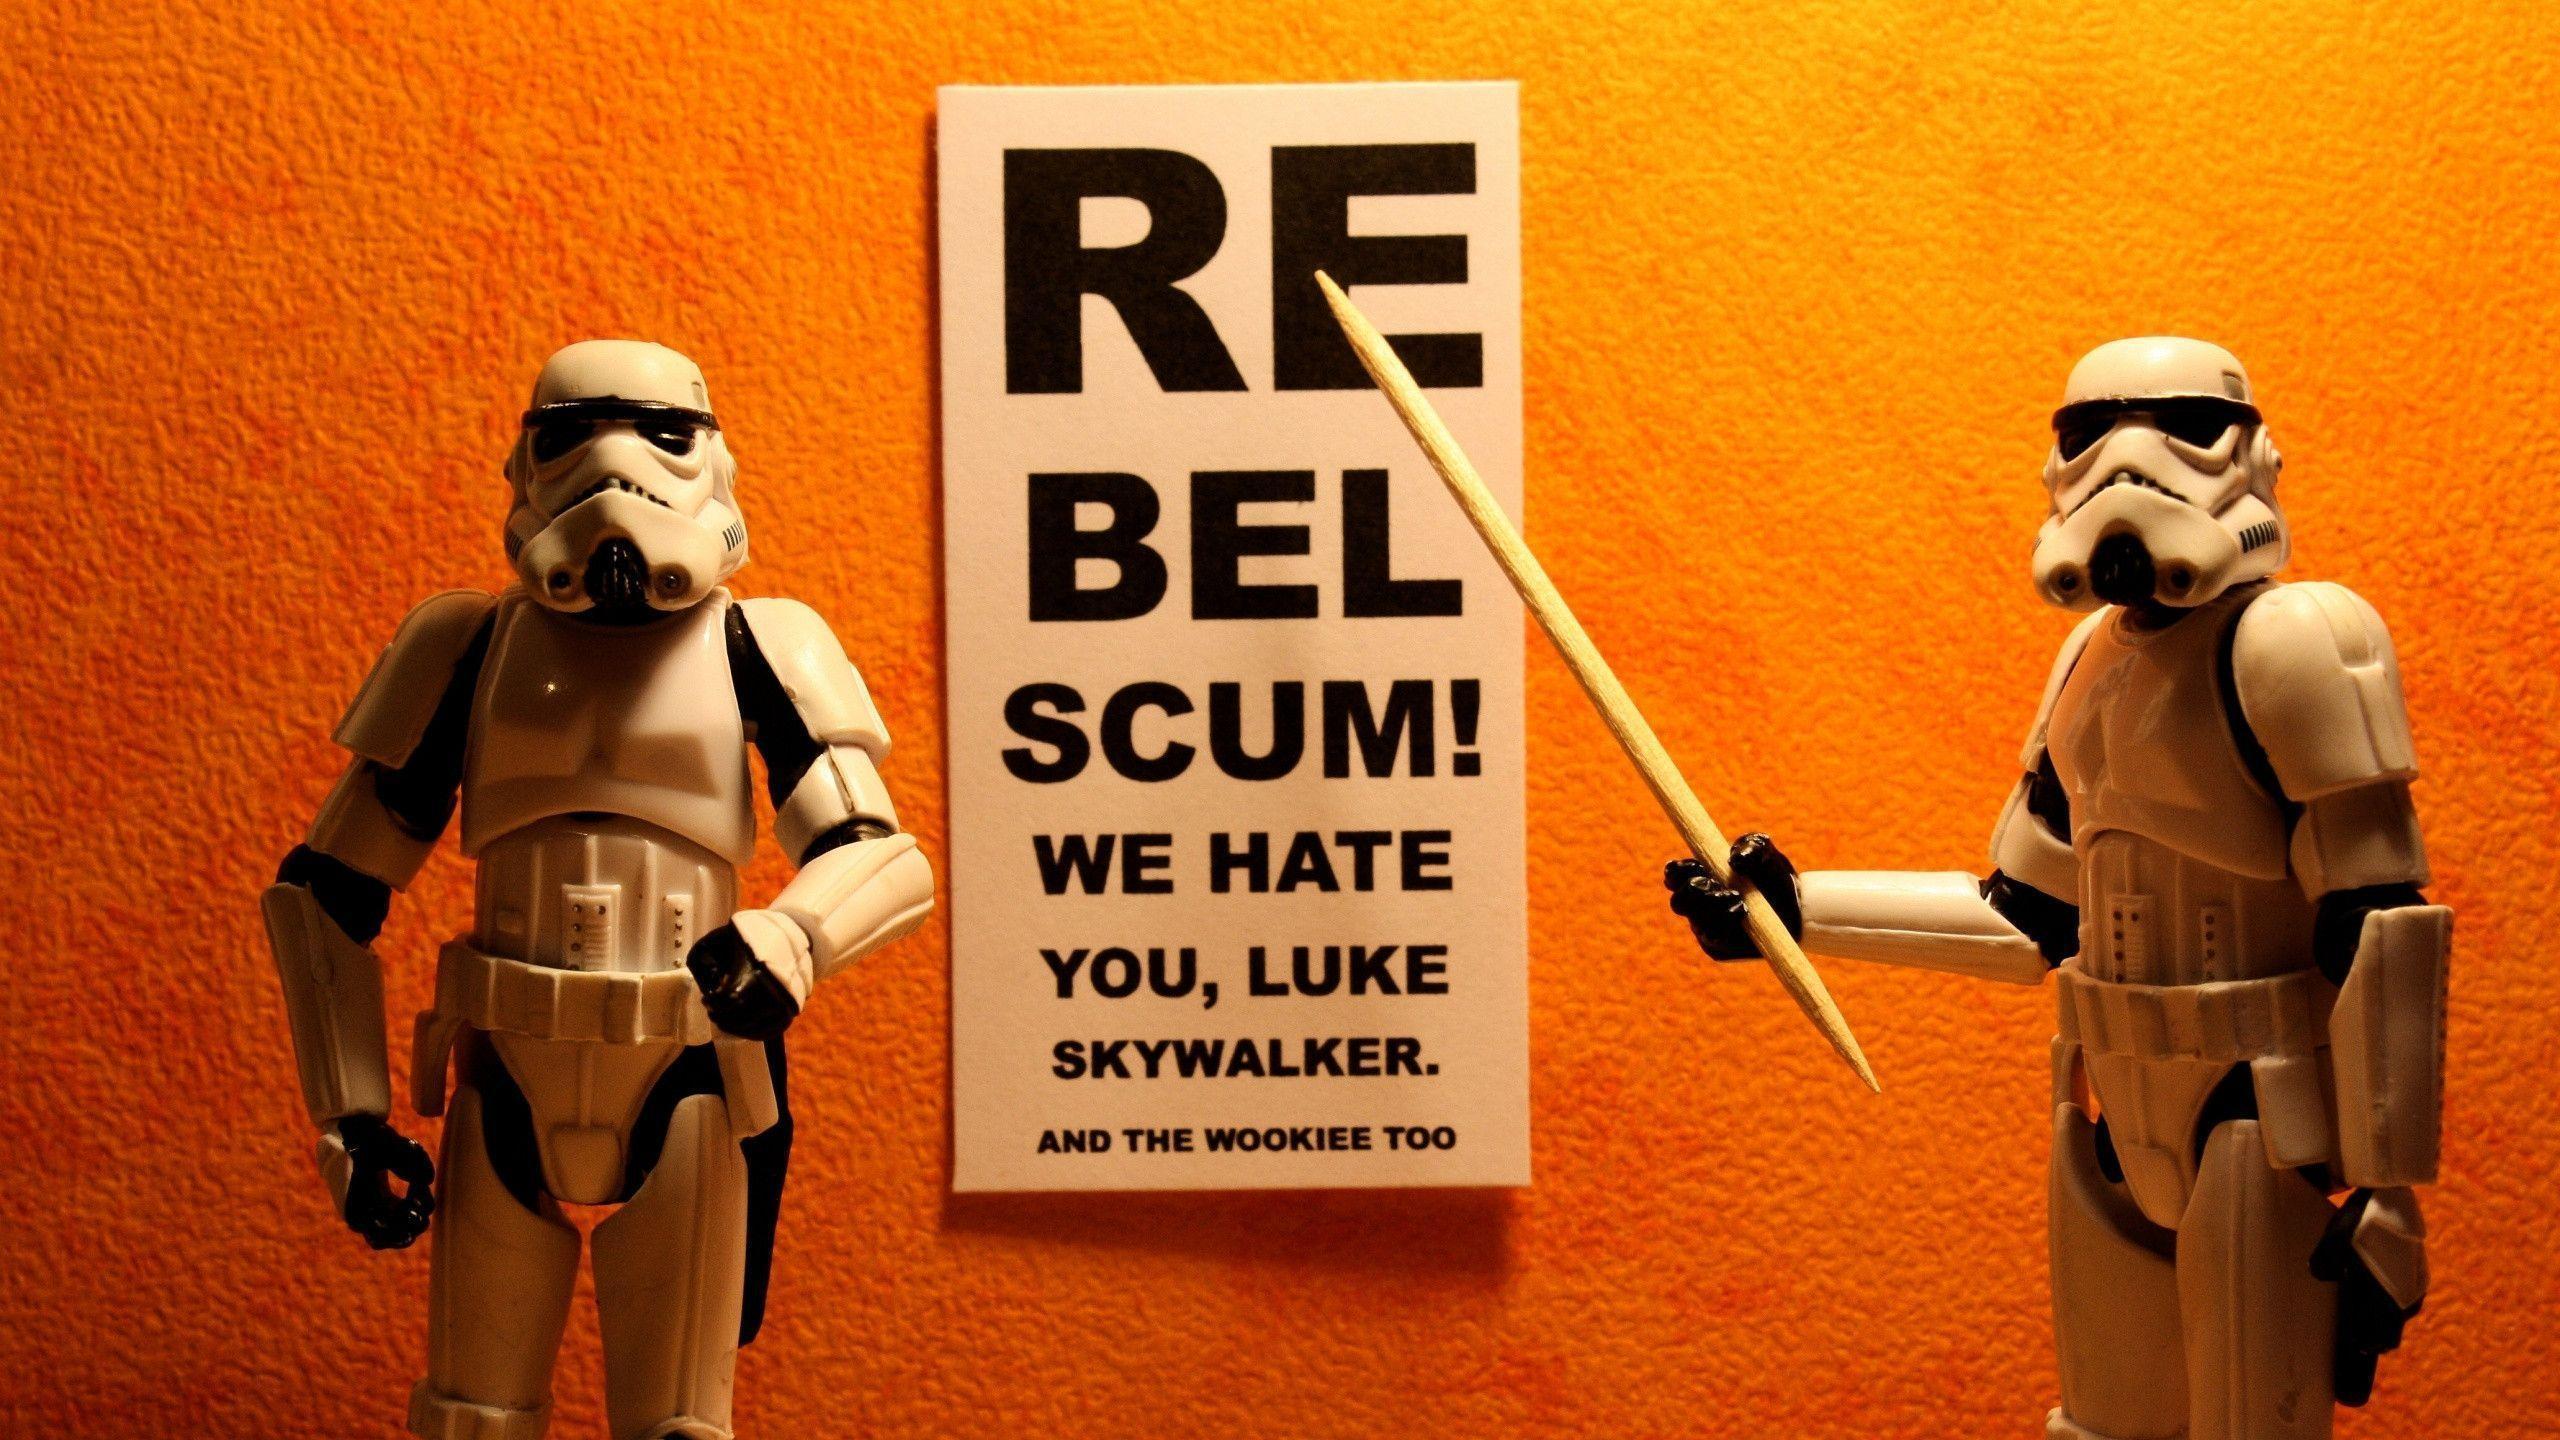 Funny Star Wars wallpaper